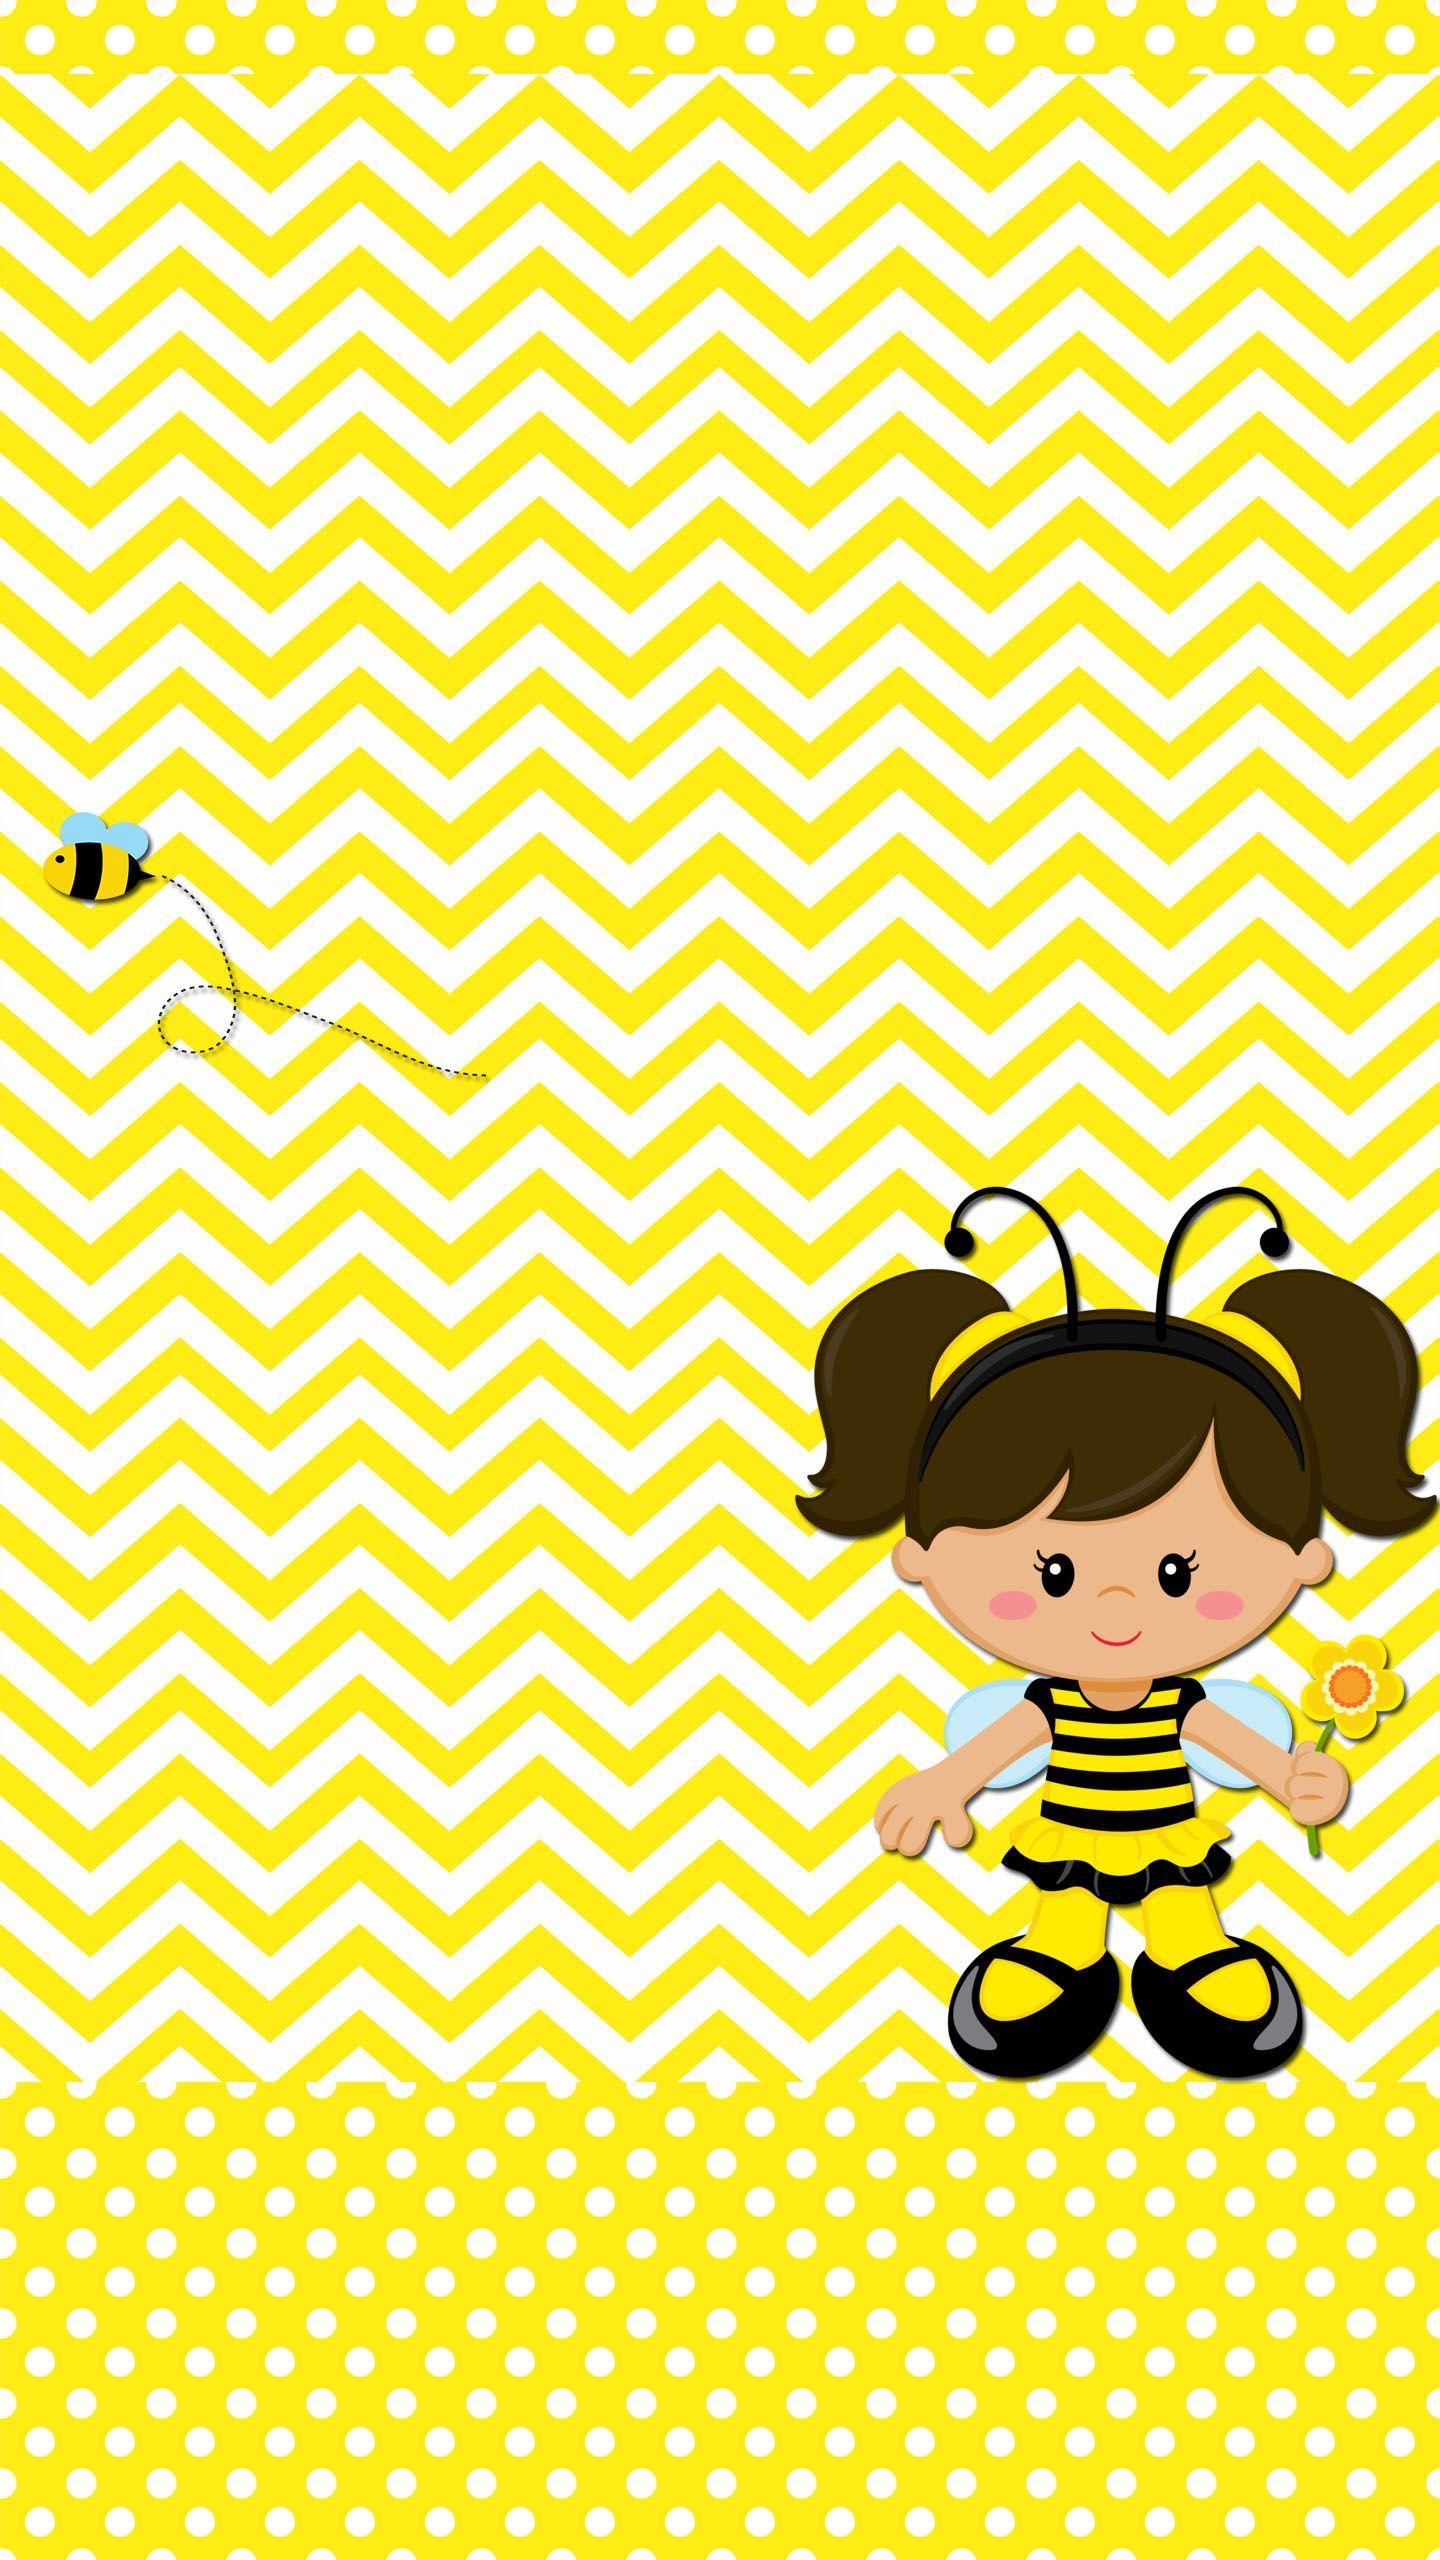 Bee And Girl 440×560 Pixels. WALLPAPER